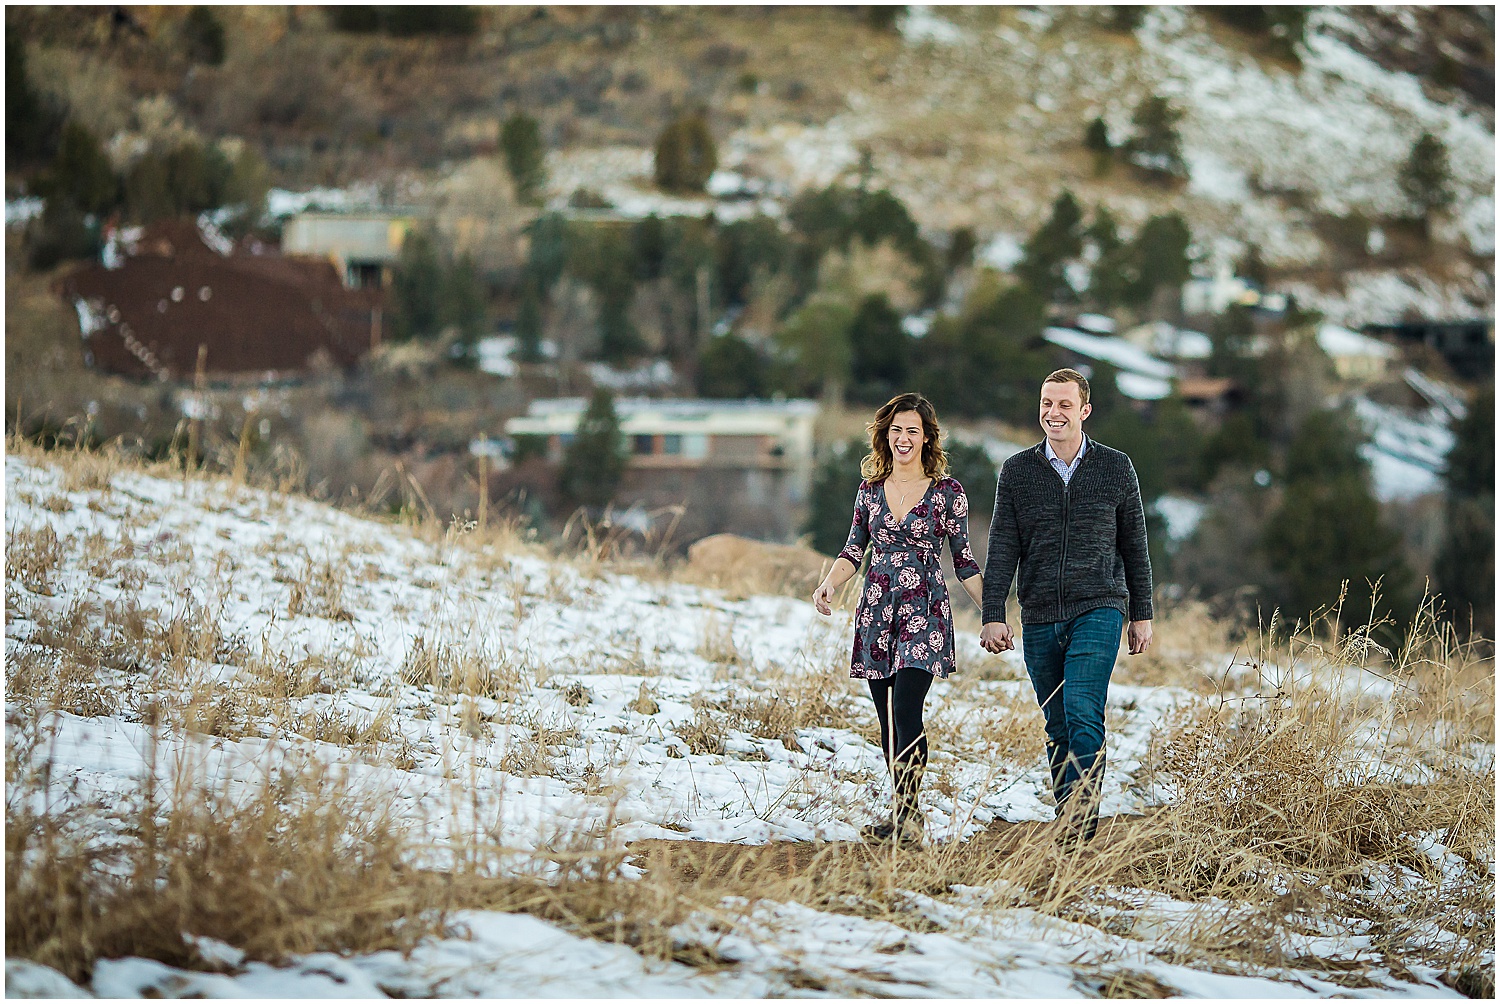 Chautauqua Couples Photos, Boulder Colorado Photographer